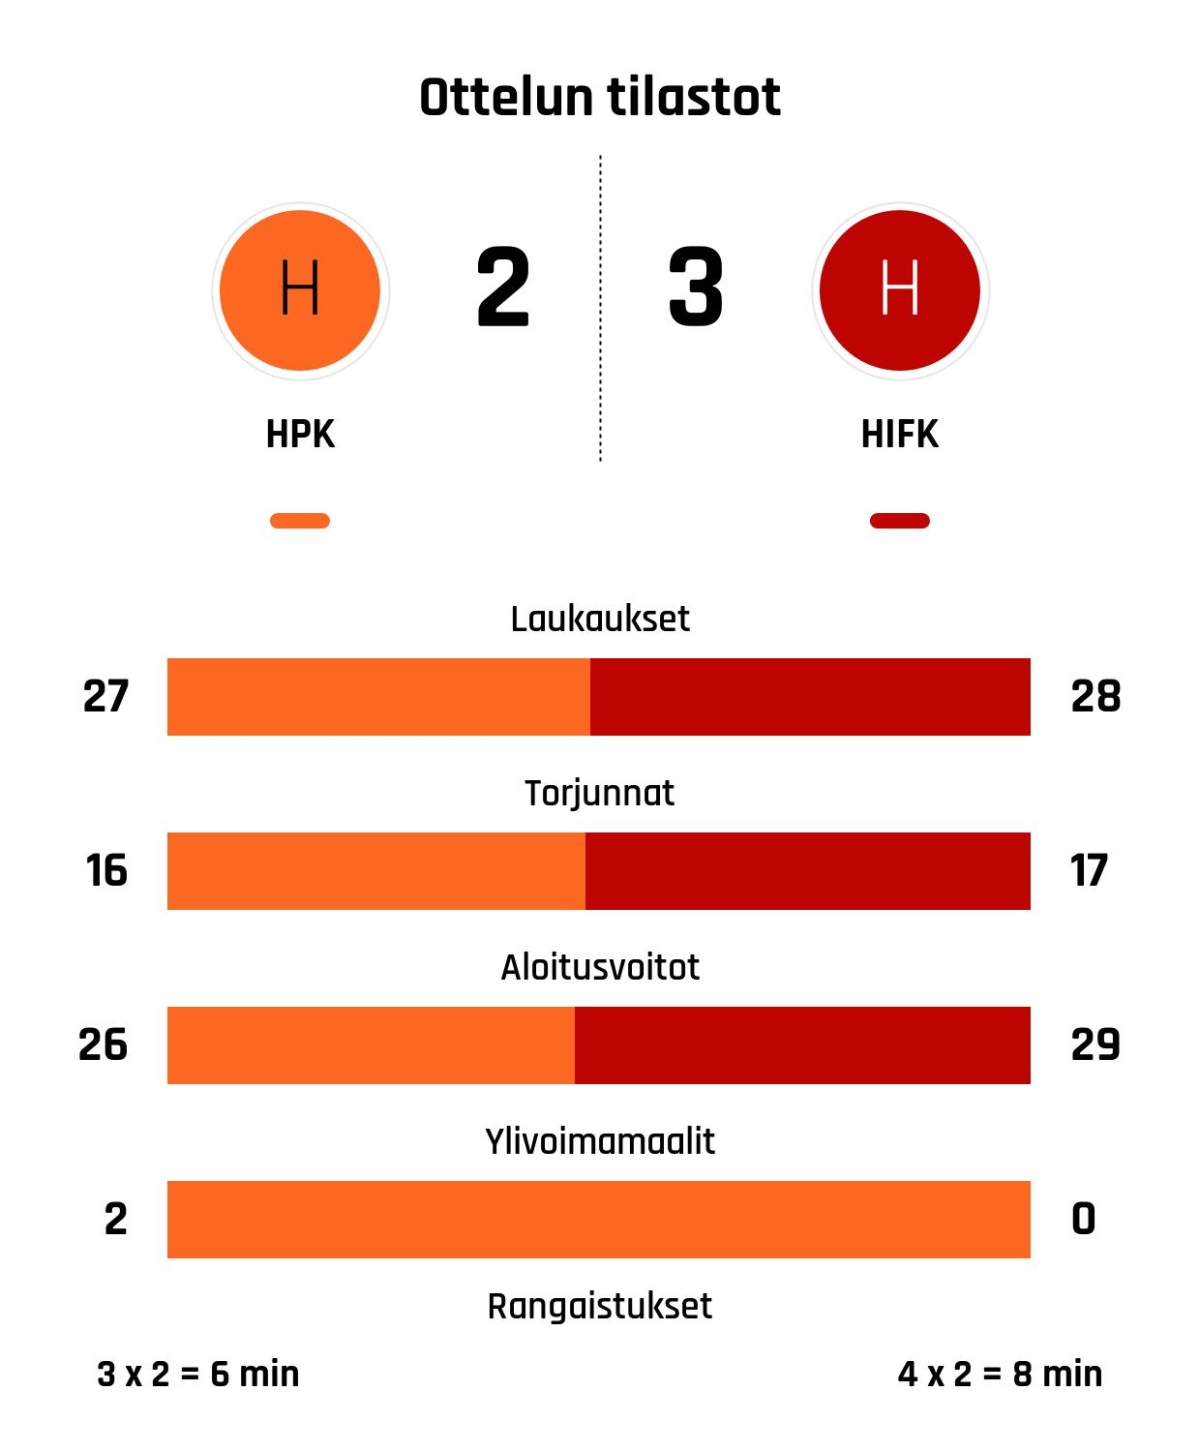 HIFK voitti HPK:n rankkareilla